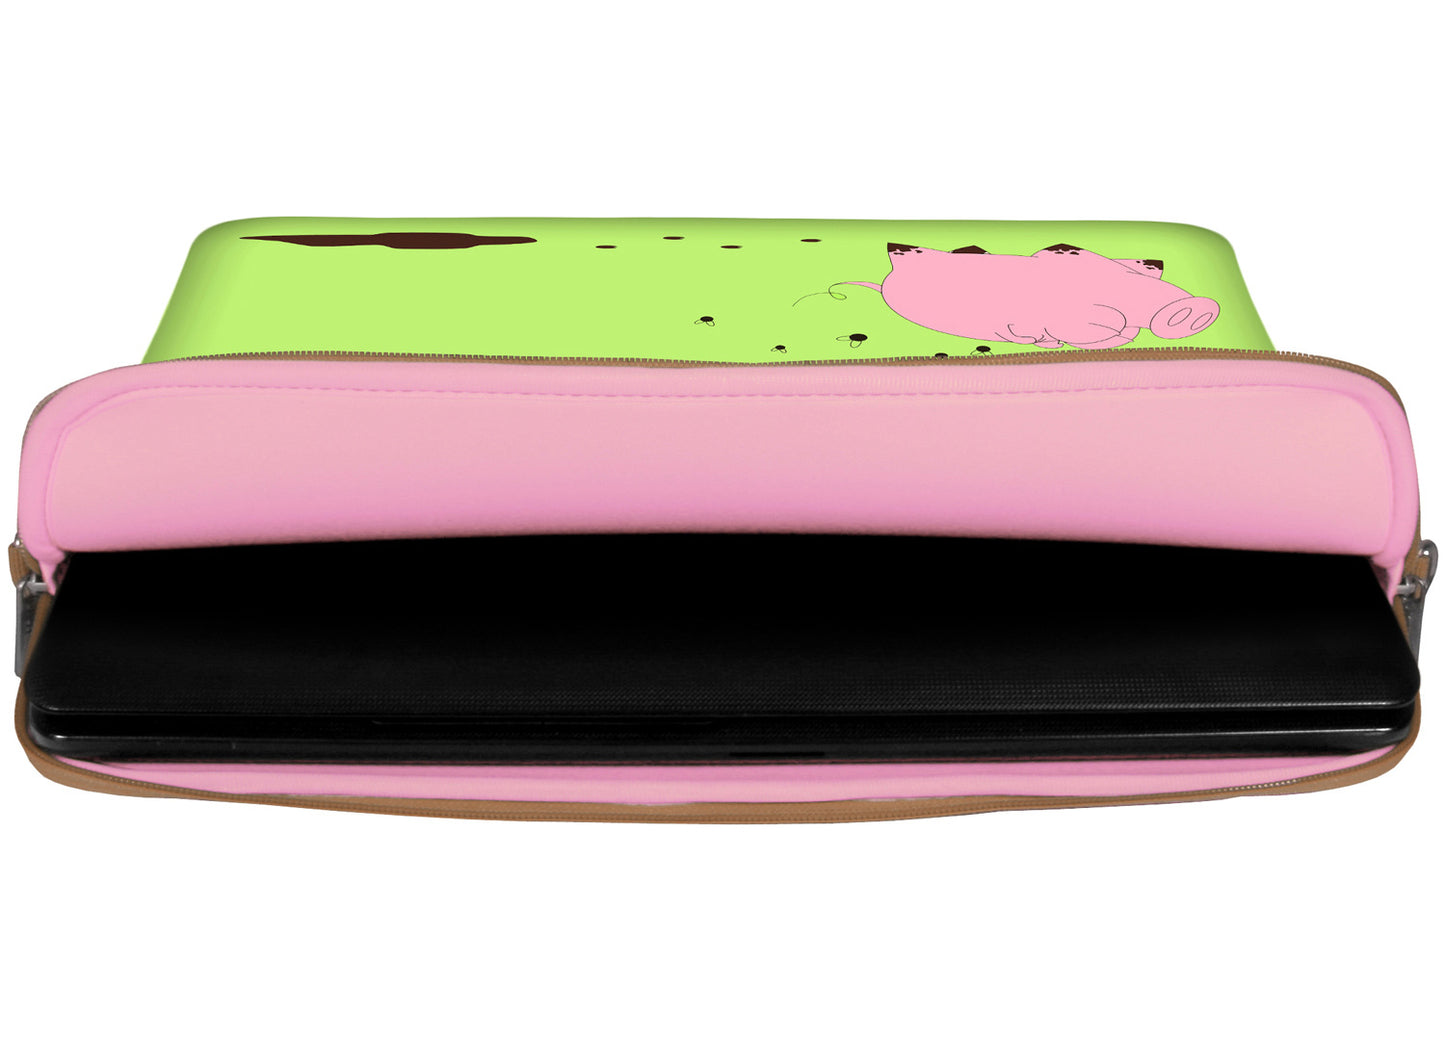 Innenansicht mit Schutzlippen der LS158 Happy Piggy Designer Laptop Tasche in rosa aus wasserabweisendem Neopren